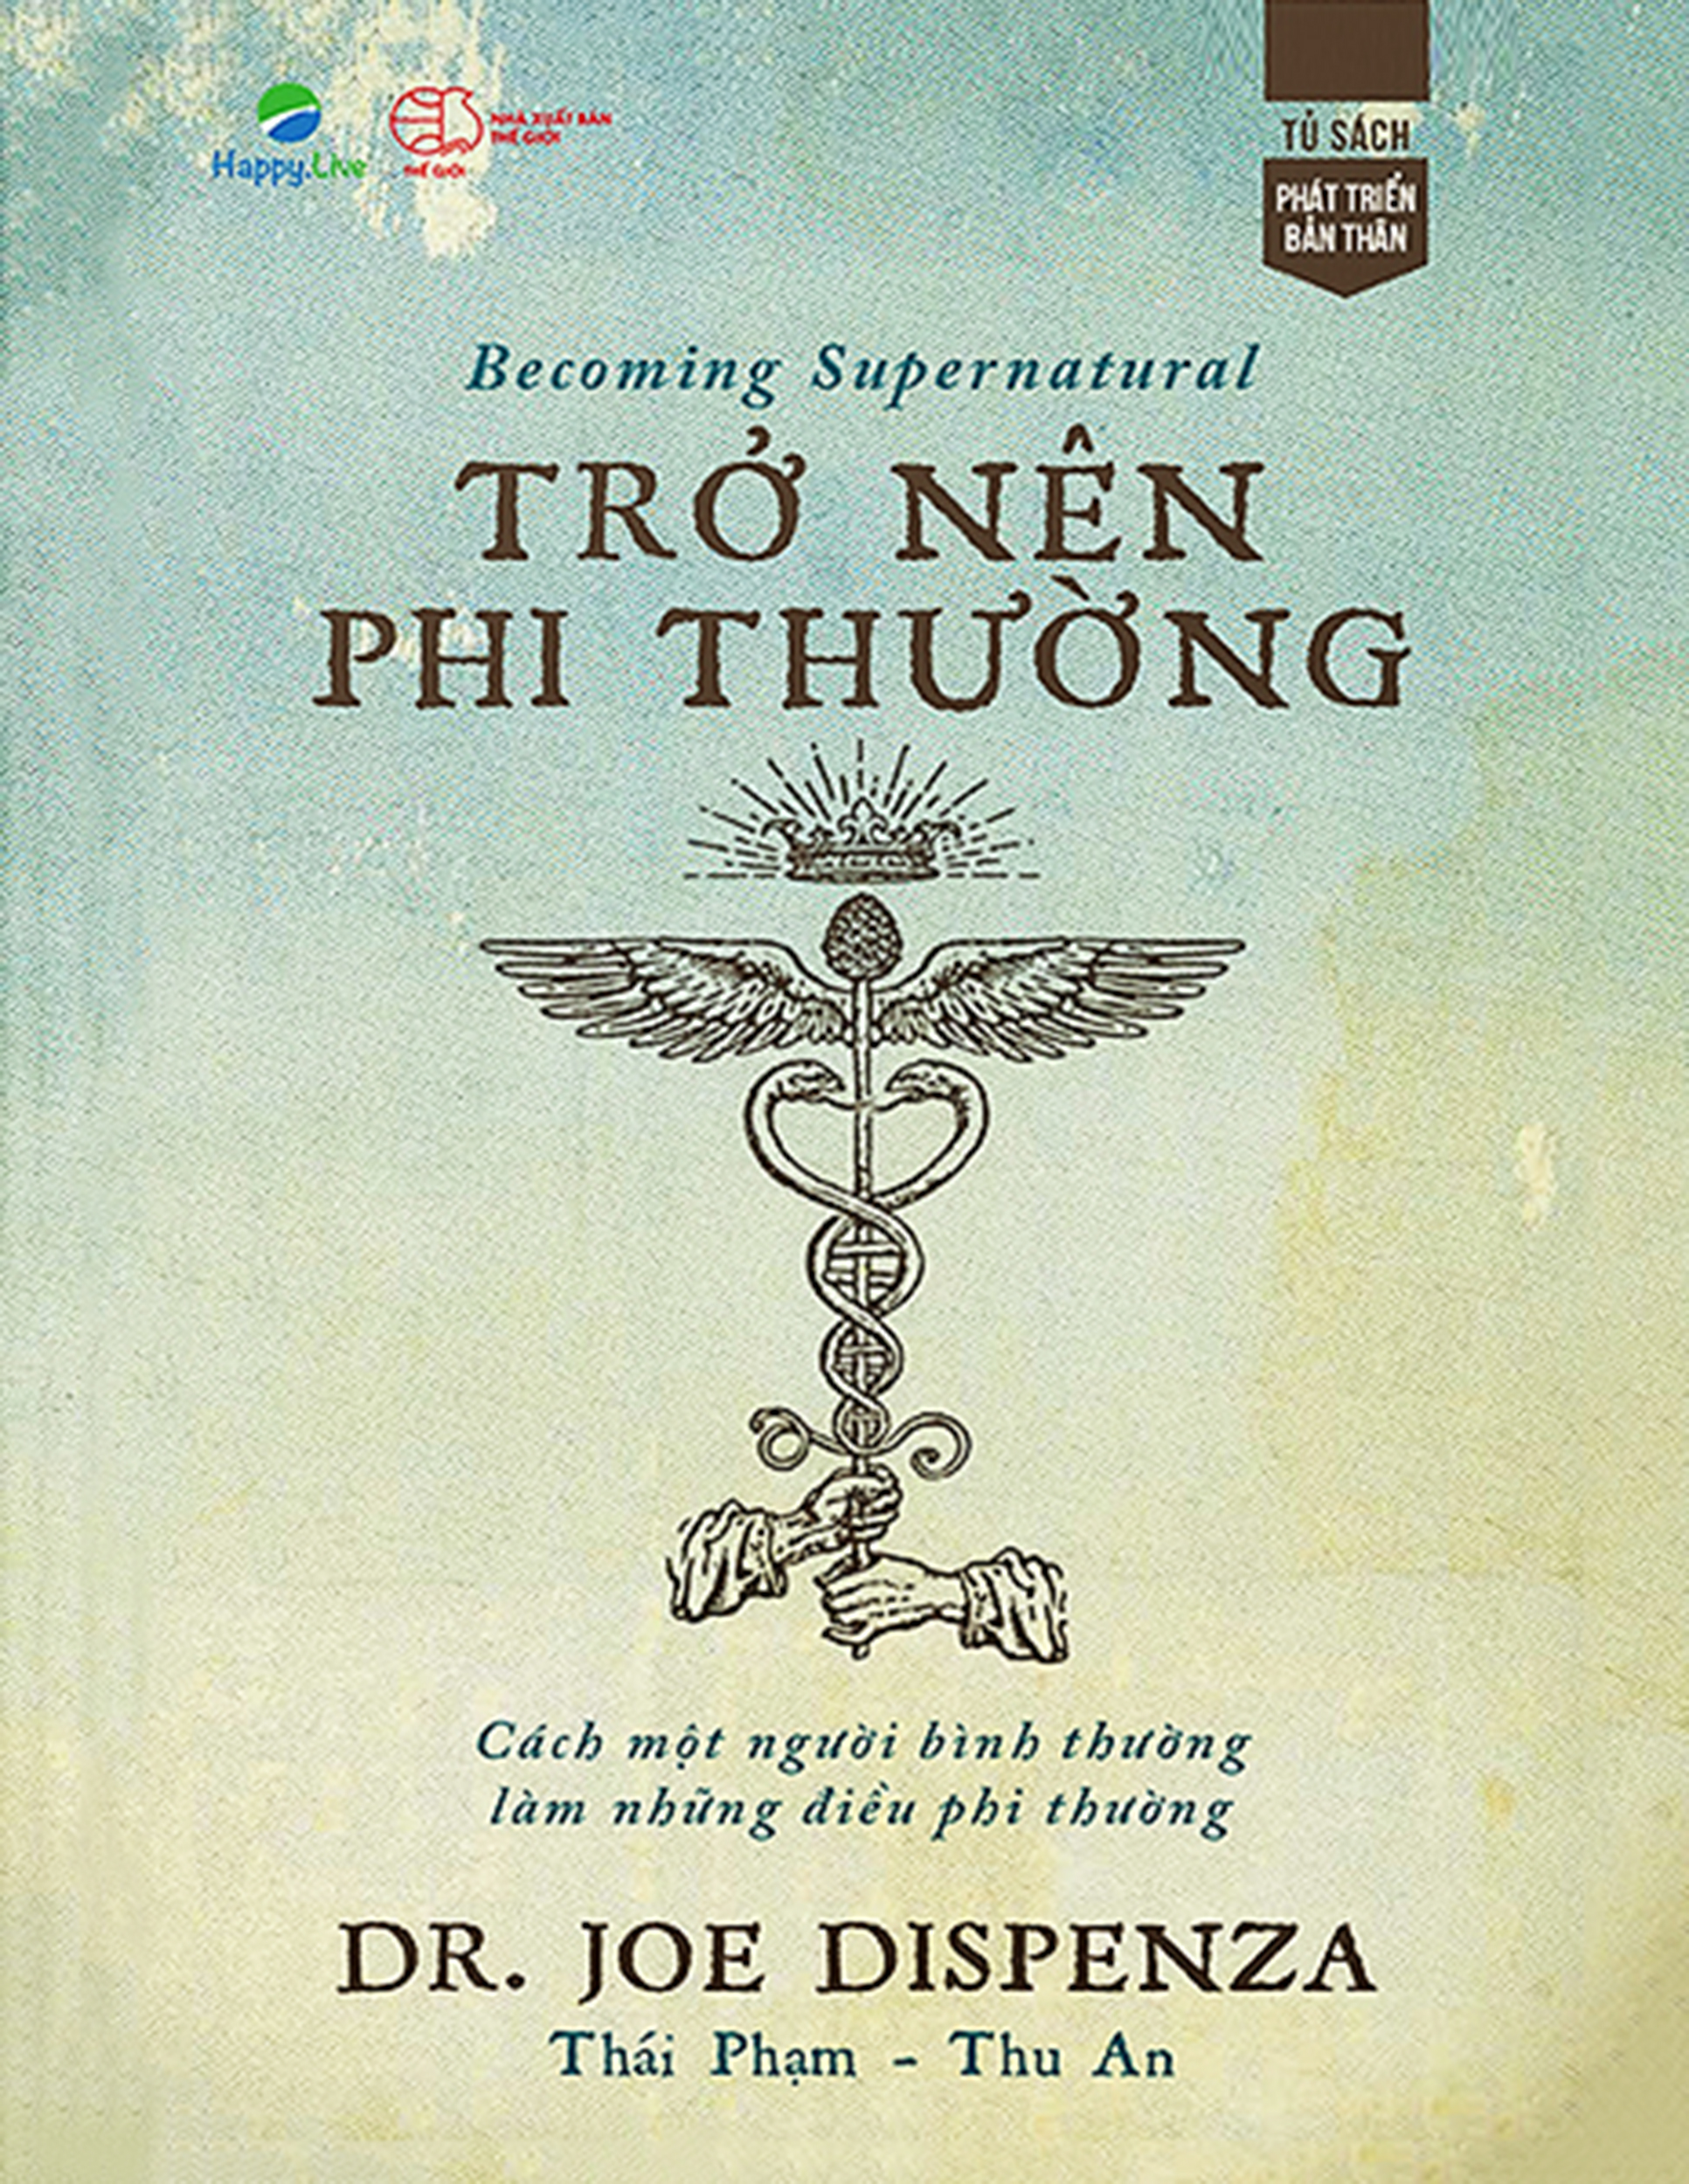 Becoming Supernatural - Trở Nên Phi Thường ebook PDF-EPUB-AWZ3-PRC-MOBI